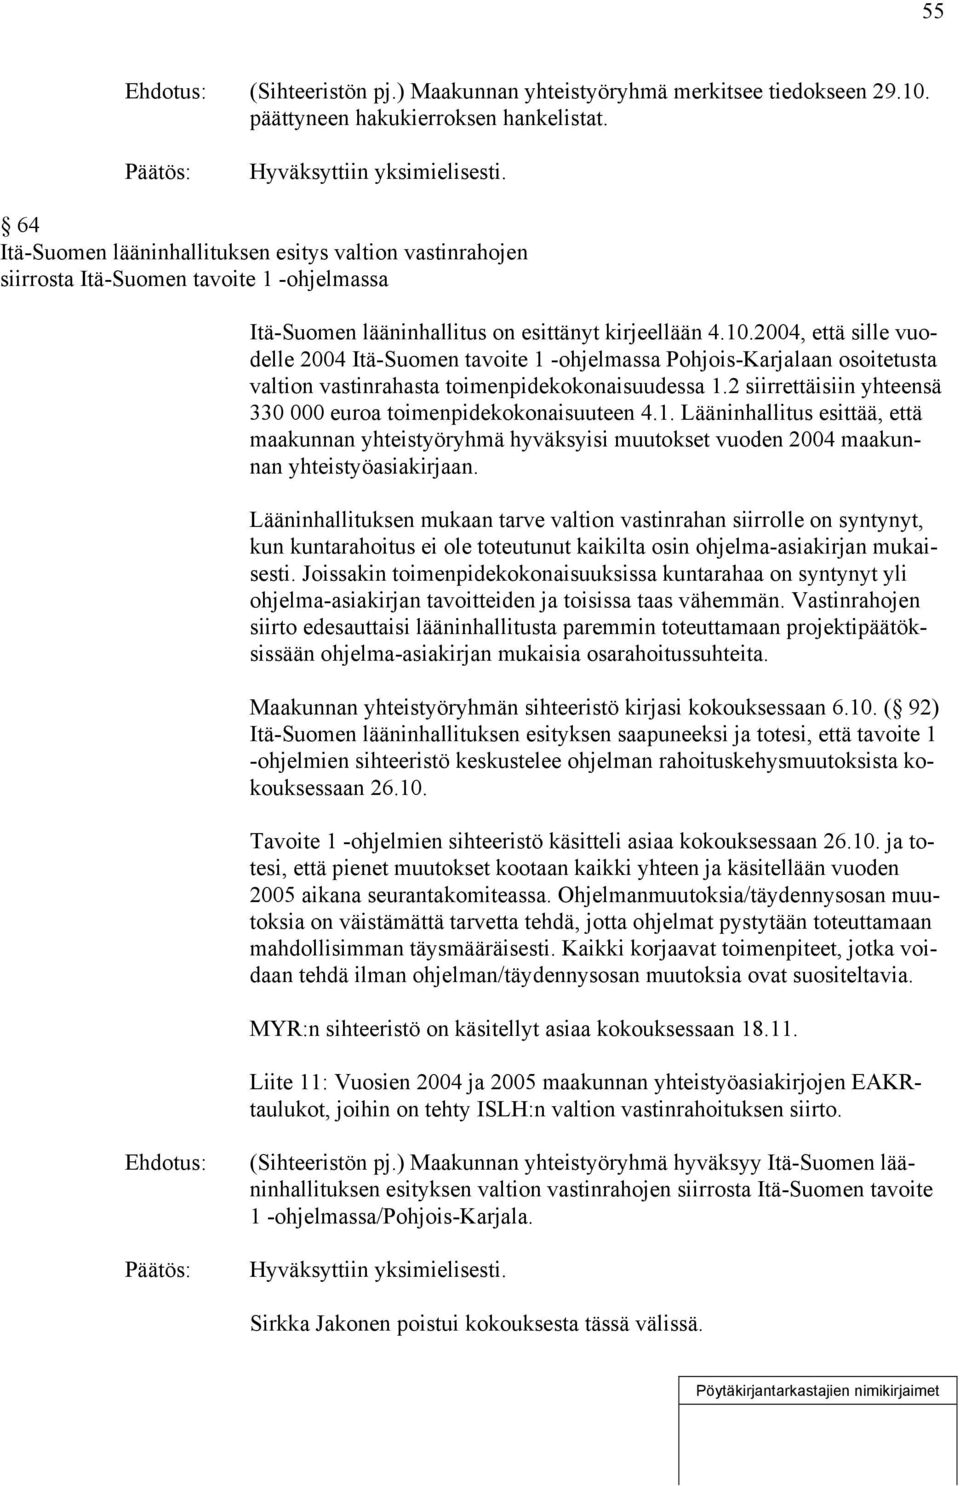 2004, että sille vuodelle 2004 Itä-Suomen tavoite 1 -ohjelmassa Pohjois-Karjalaan osoitetusta valtion vastinrahasta toimenpidekokonaisuudessa 1.